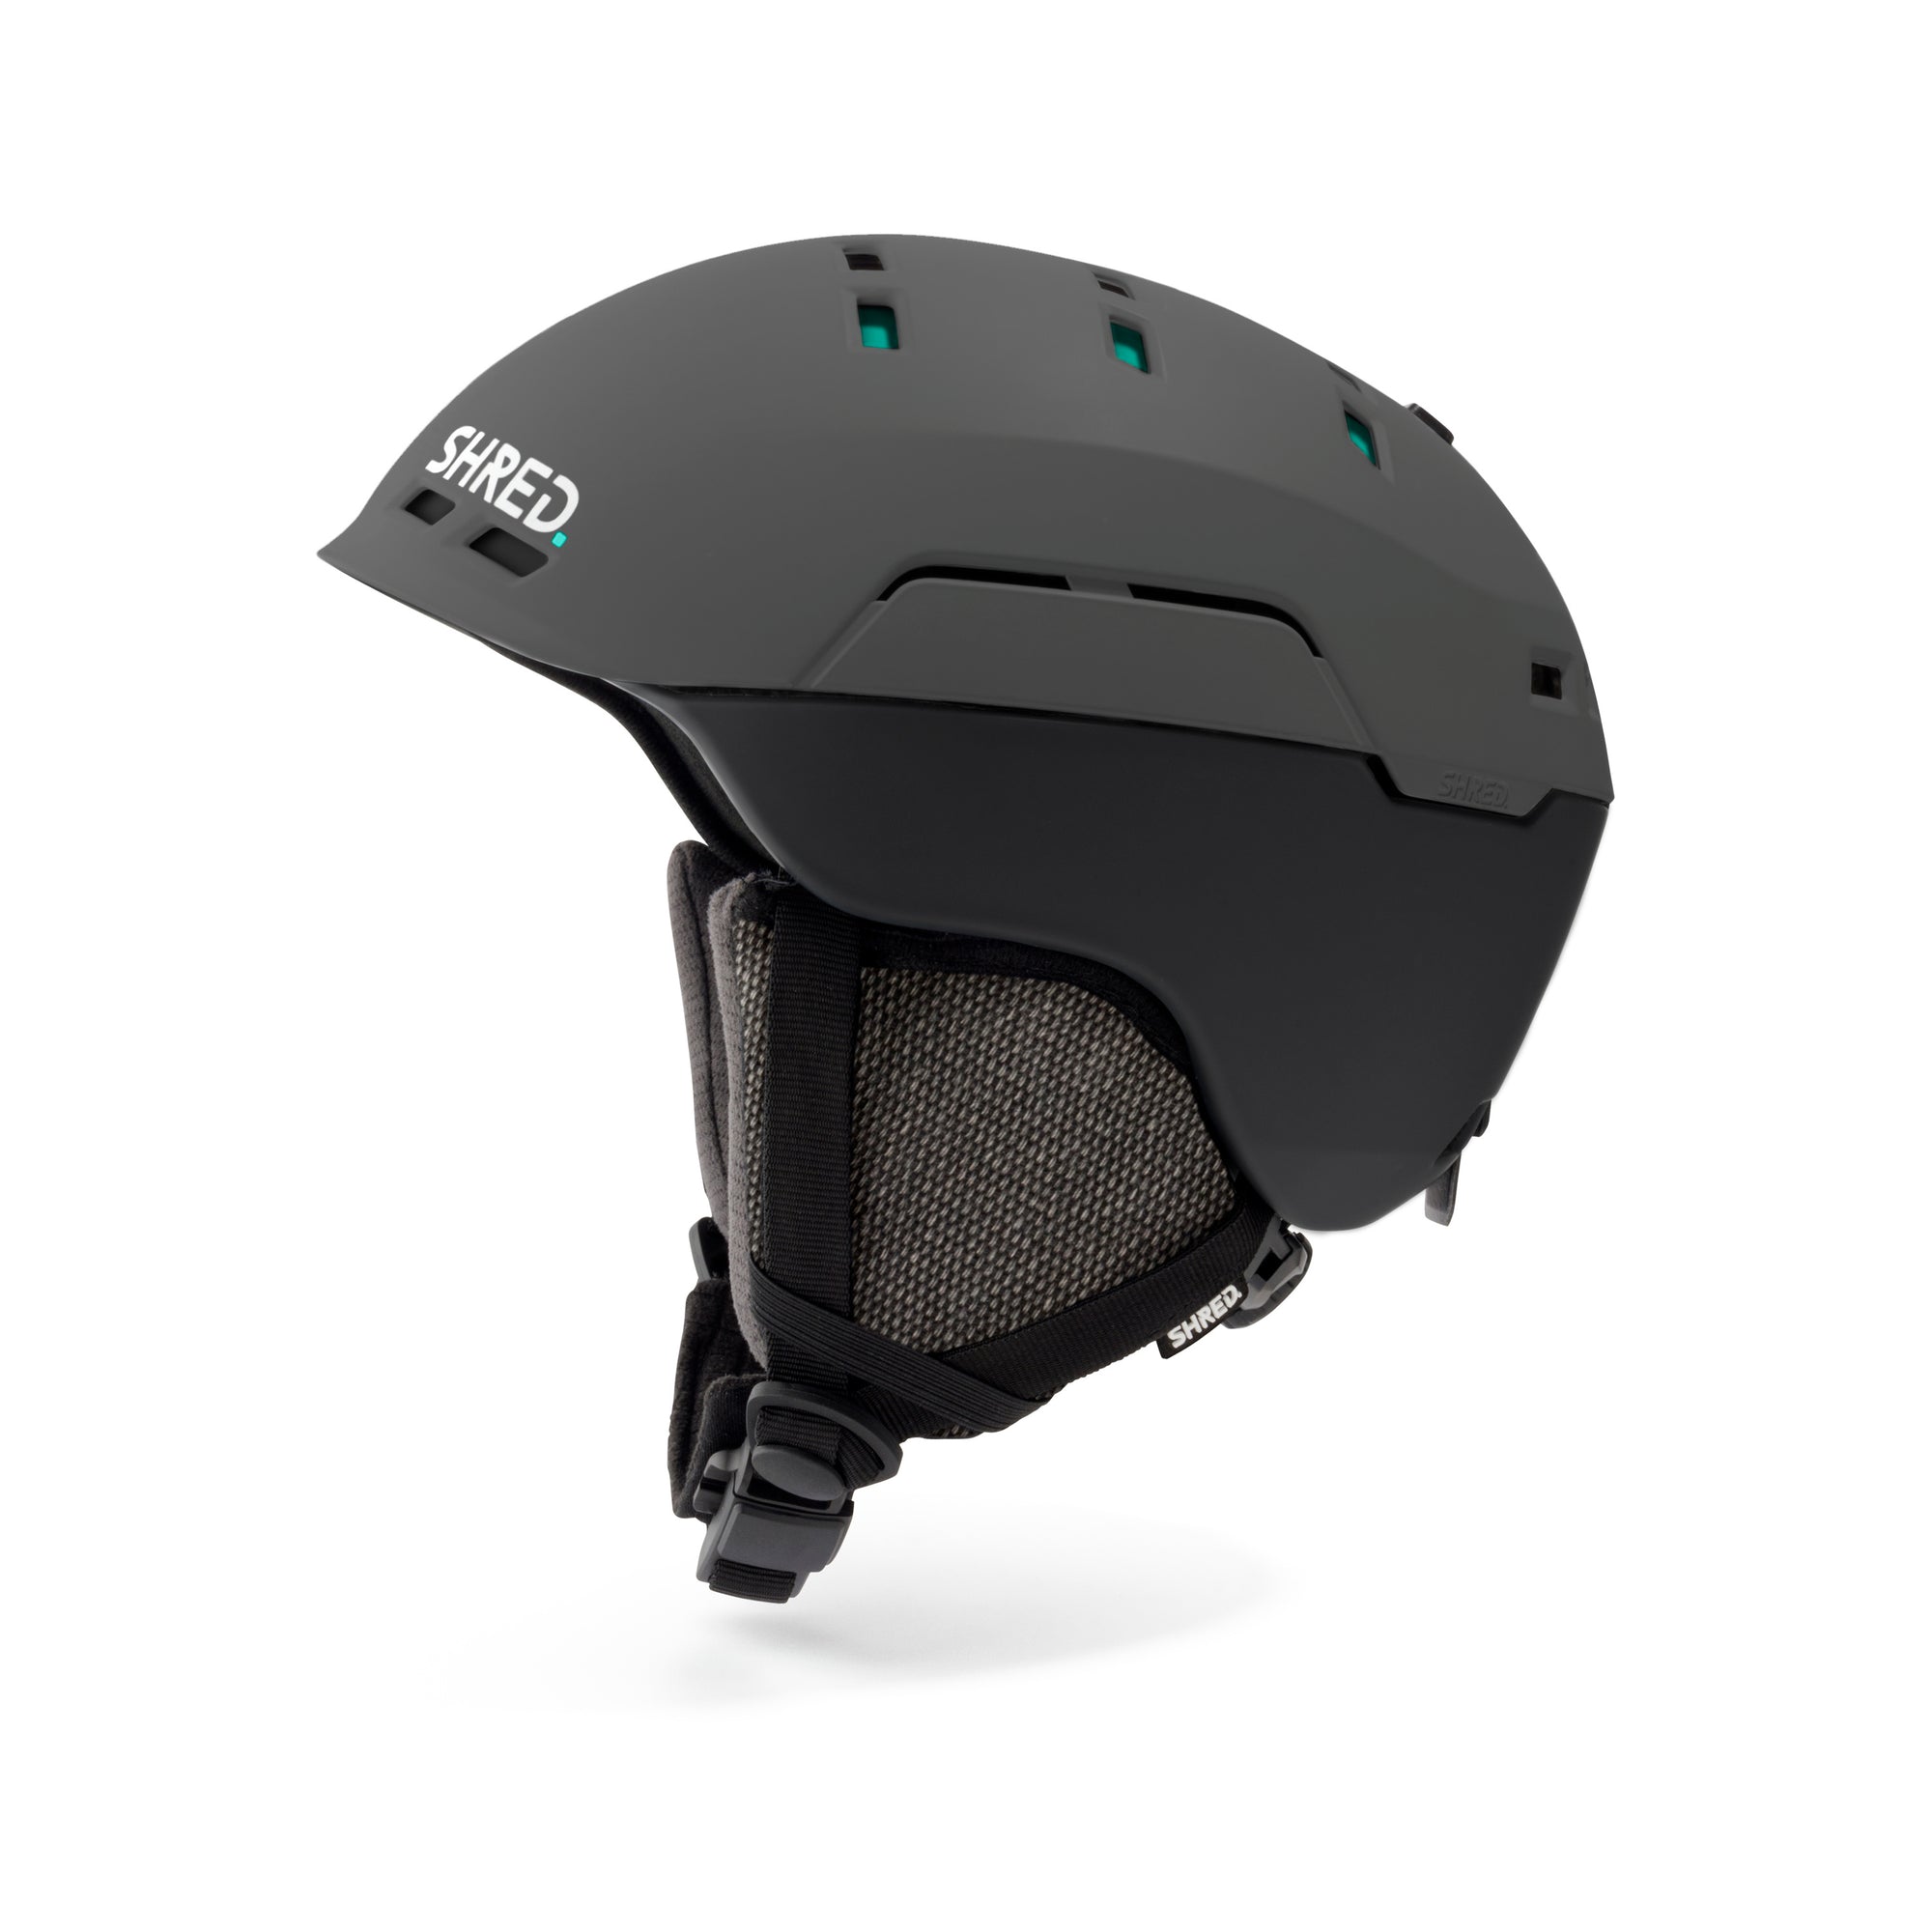 Notion Noshock - Ski Helmets|HENTNN16L,HENTNN16M,HENTNN16S